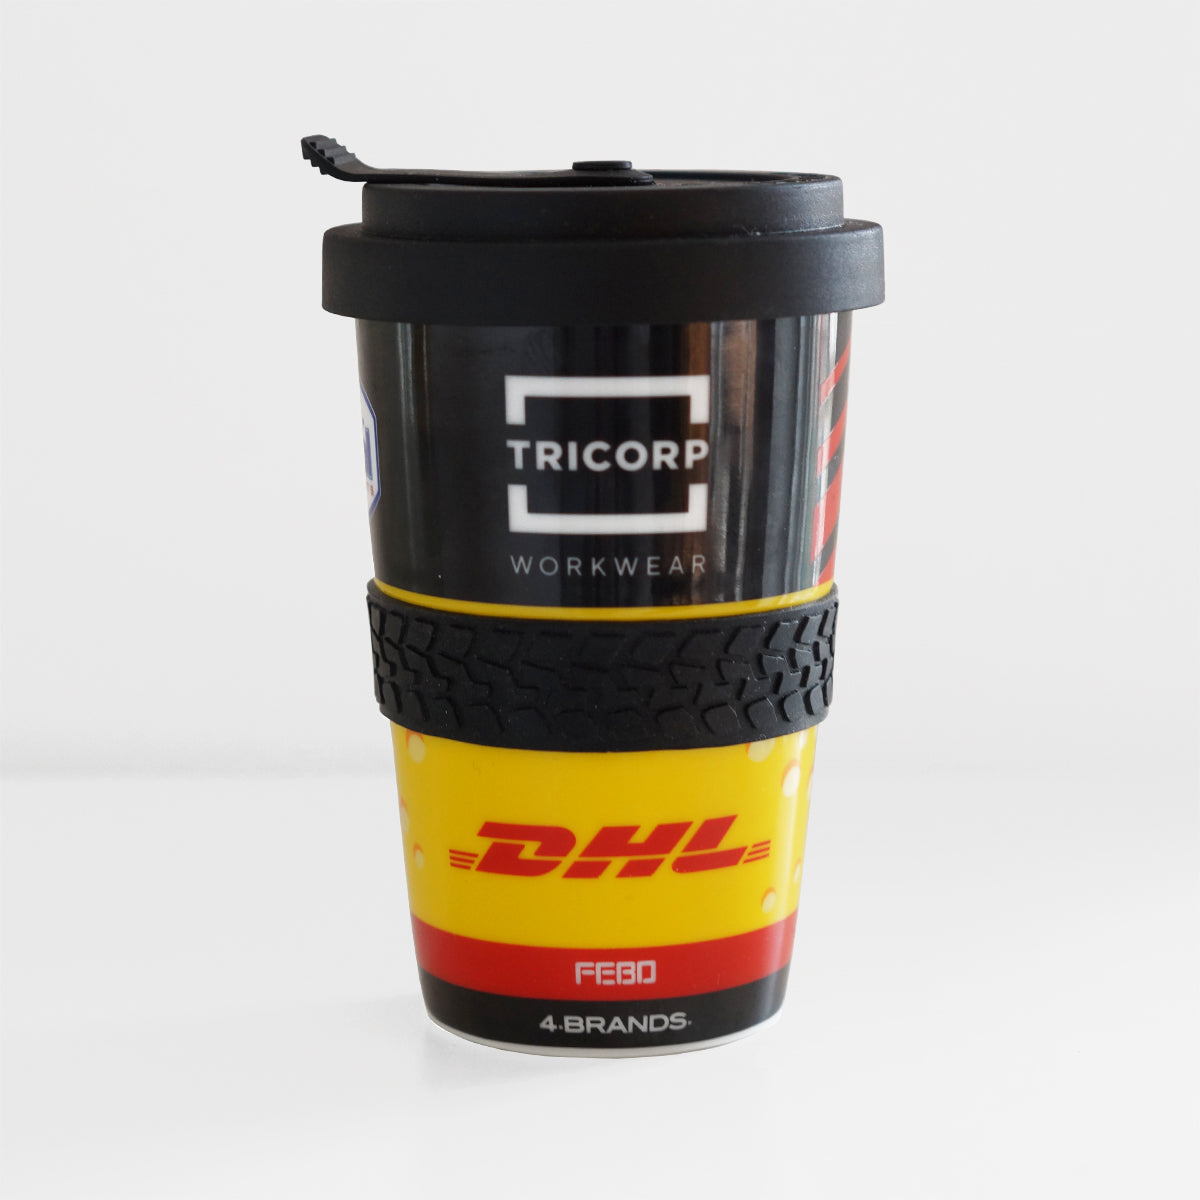 Coffee 2 Go Mug | Tom Coronel Racing Mug